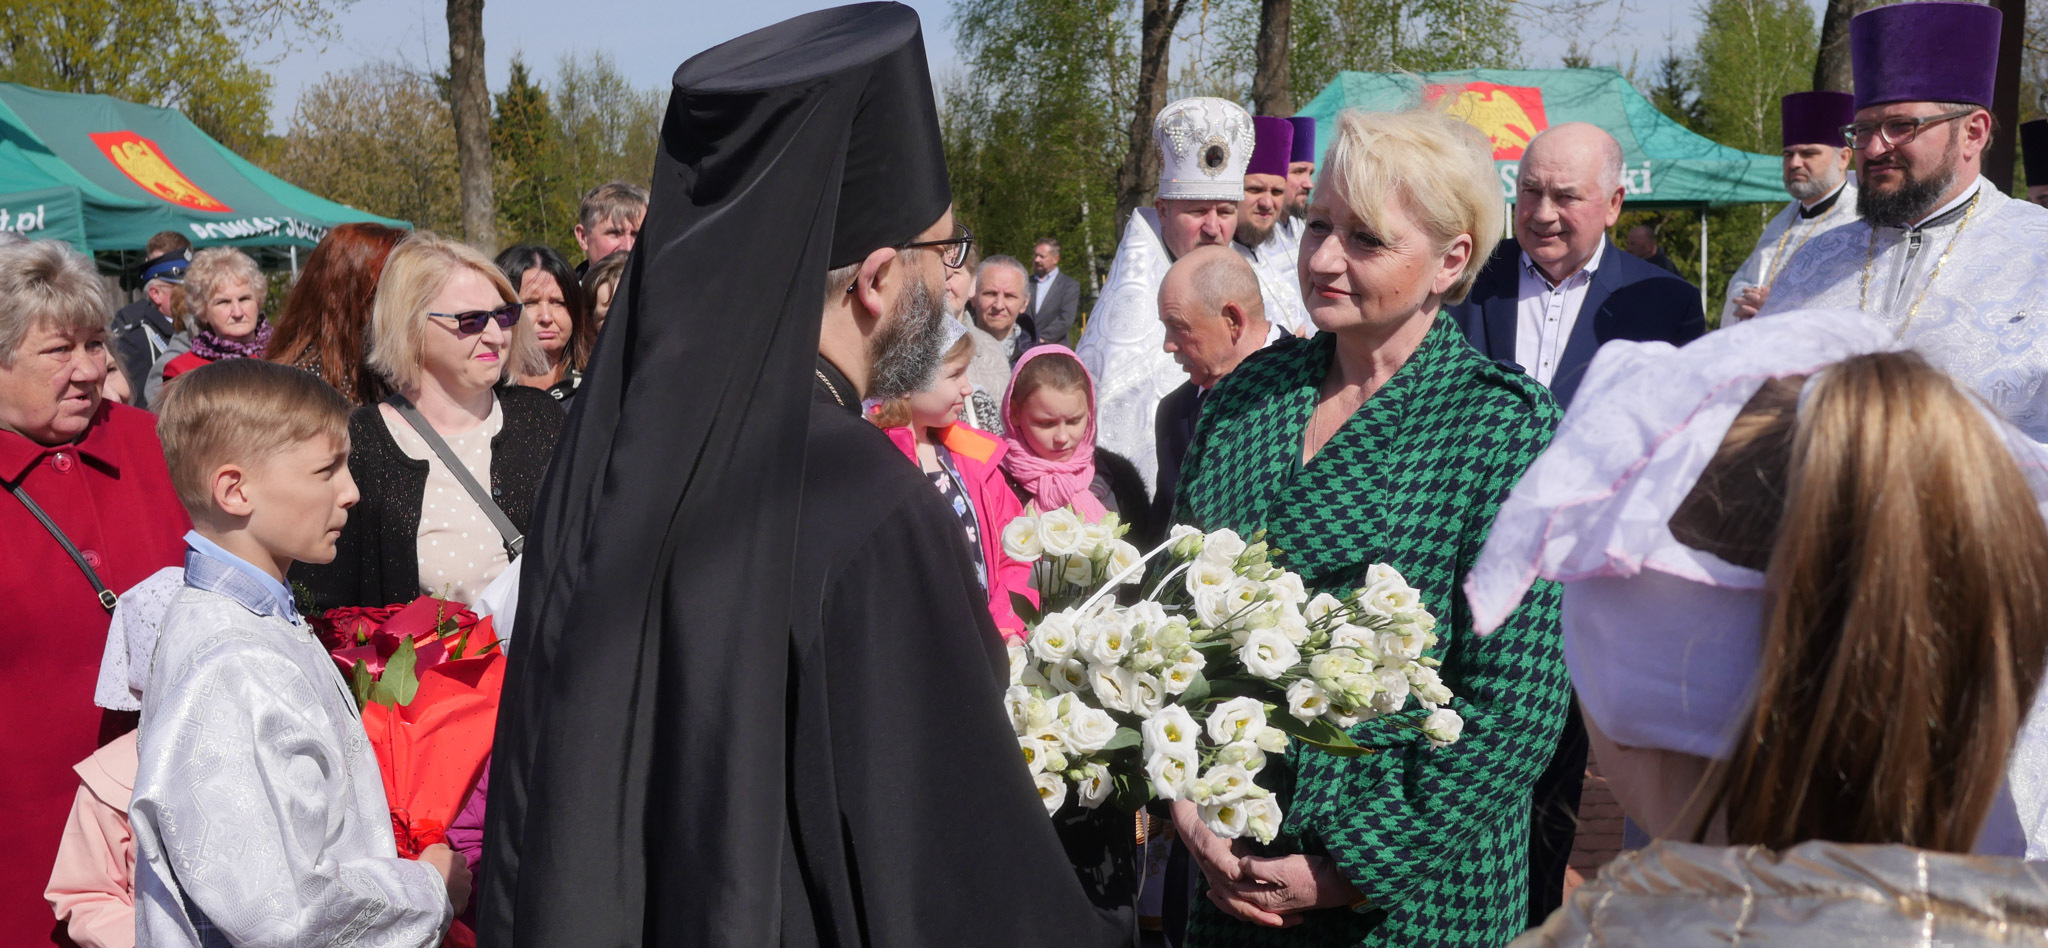 Duchowny trzyma kwiaty przed Wiesławą Burnos, wokół uczestnicy wydarzenia